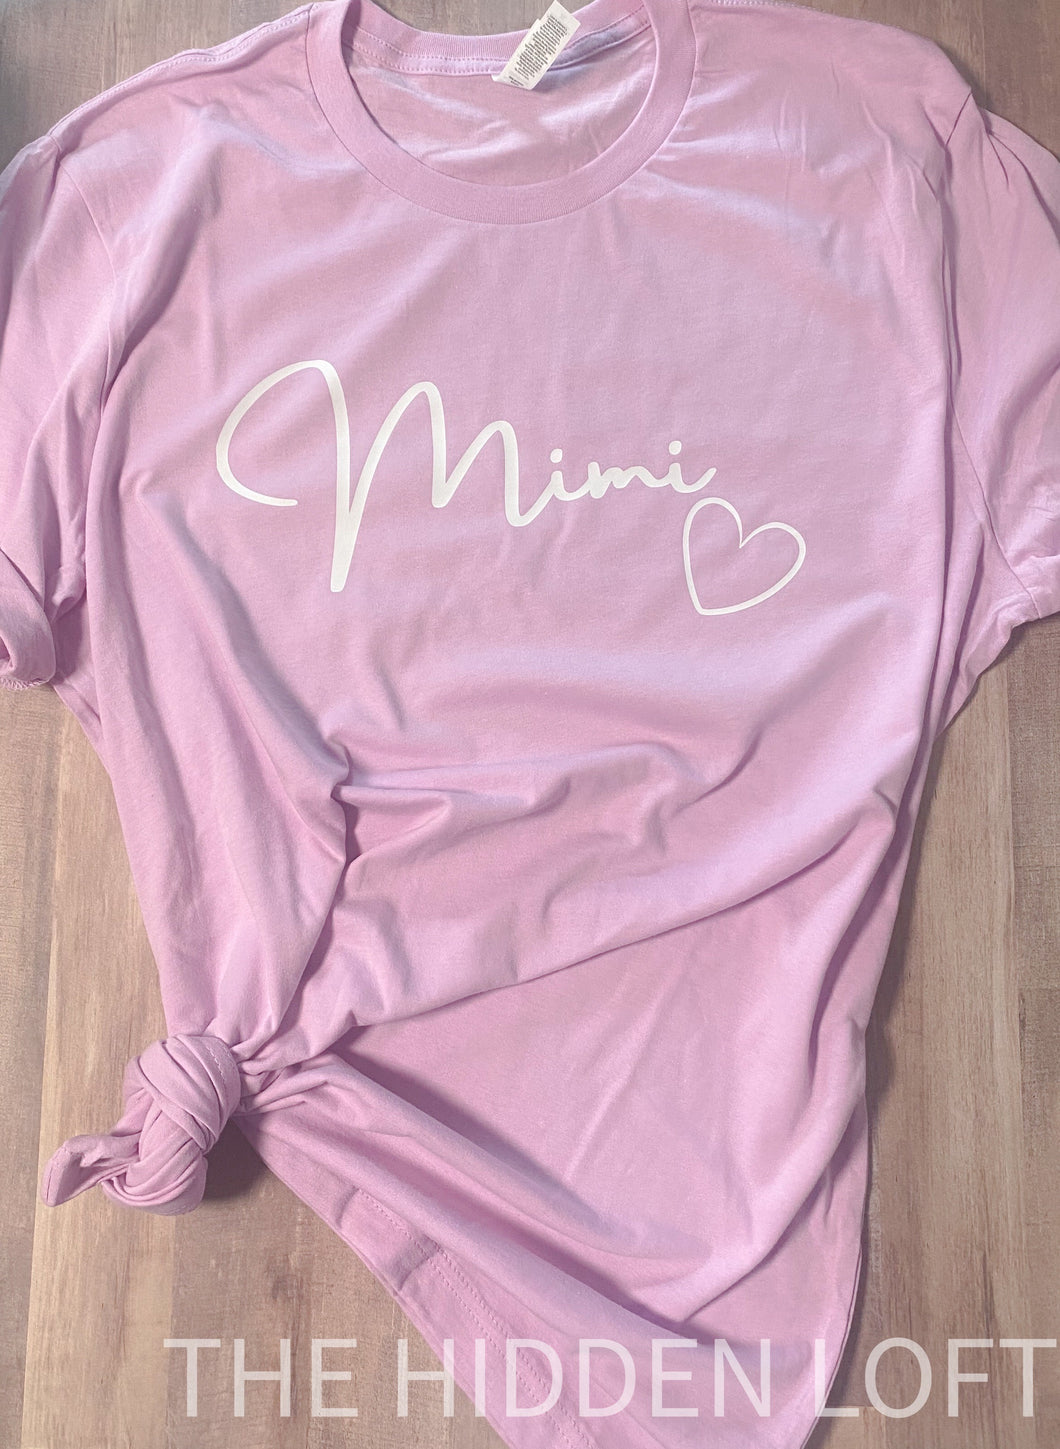 Mimi T-Shirt